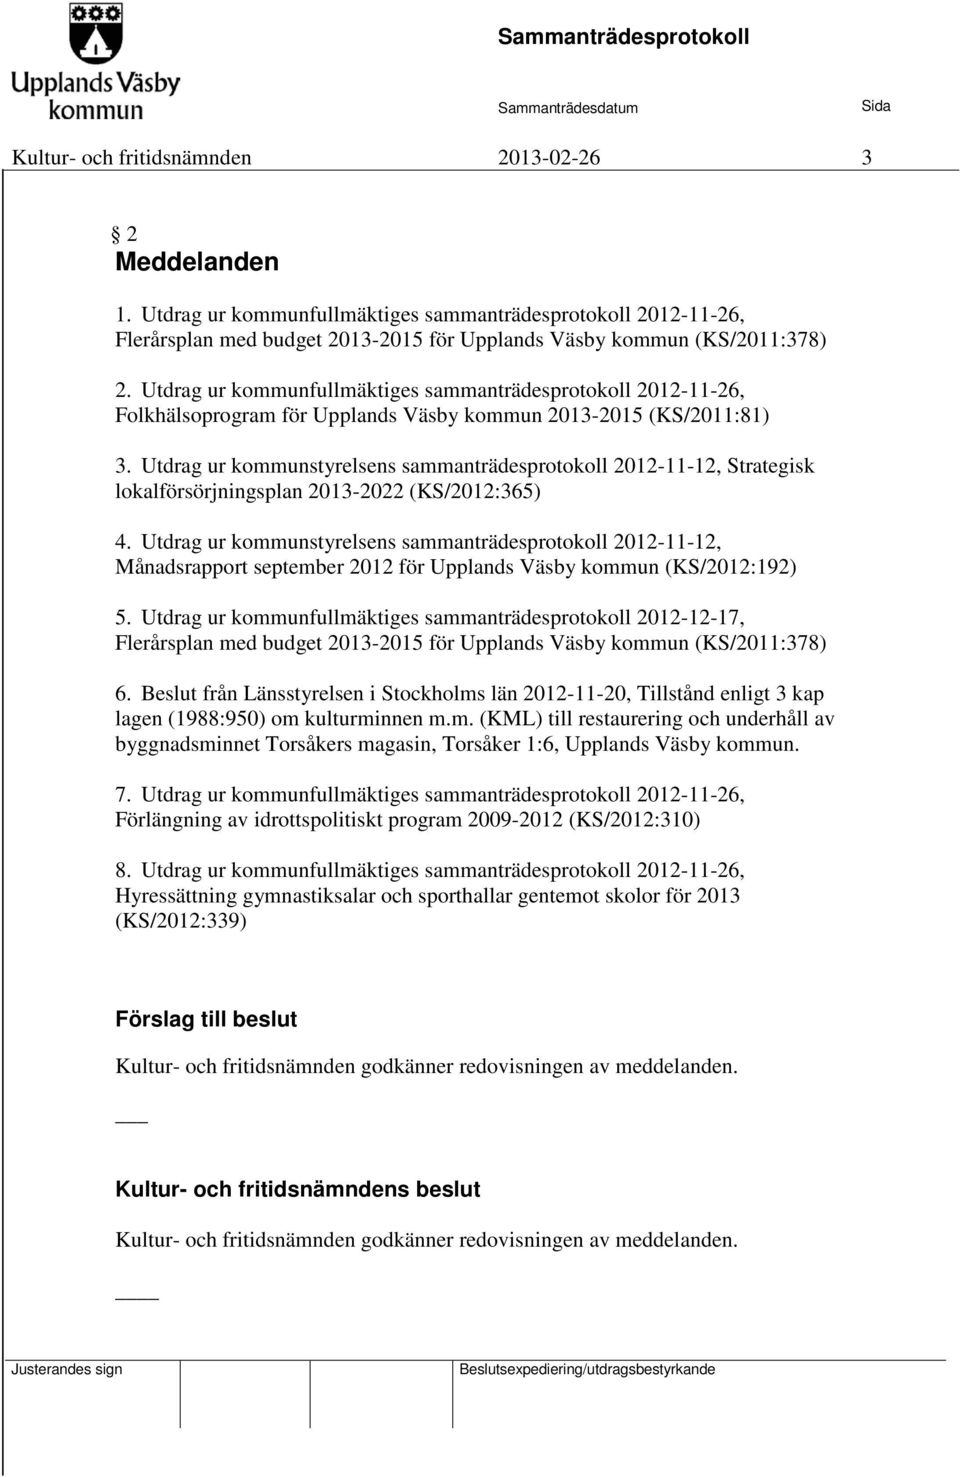 Utdrag ur kommunstyrelsens sammanträdesprotokoll 2012-11-12, Strategisk lokalförsörjningsplan 2013-2022 (KS/2012:365) 4.